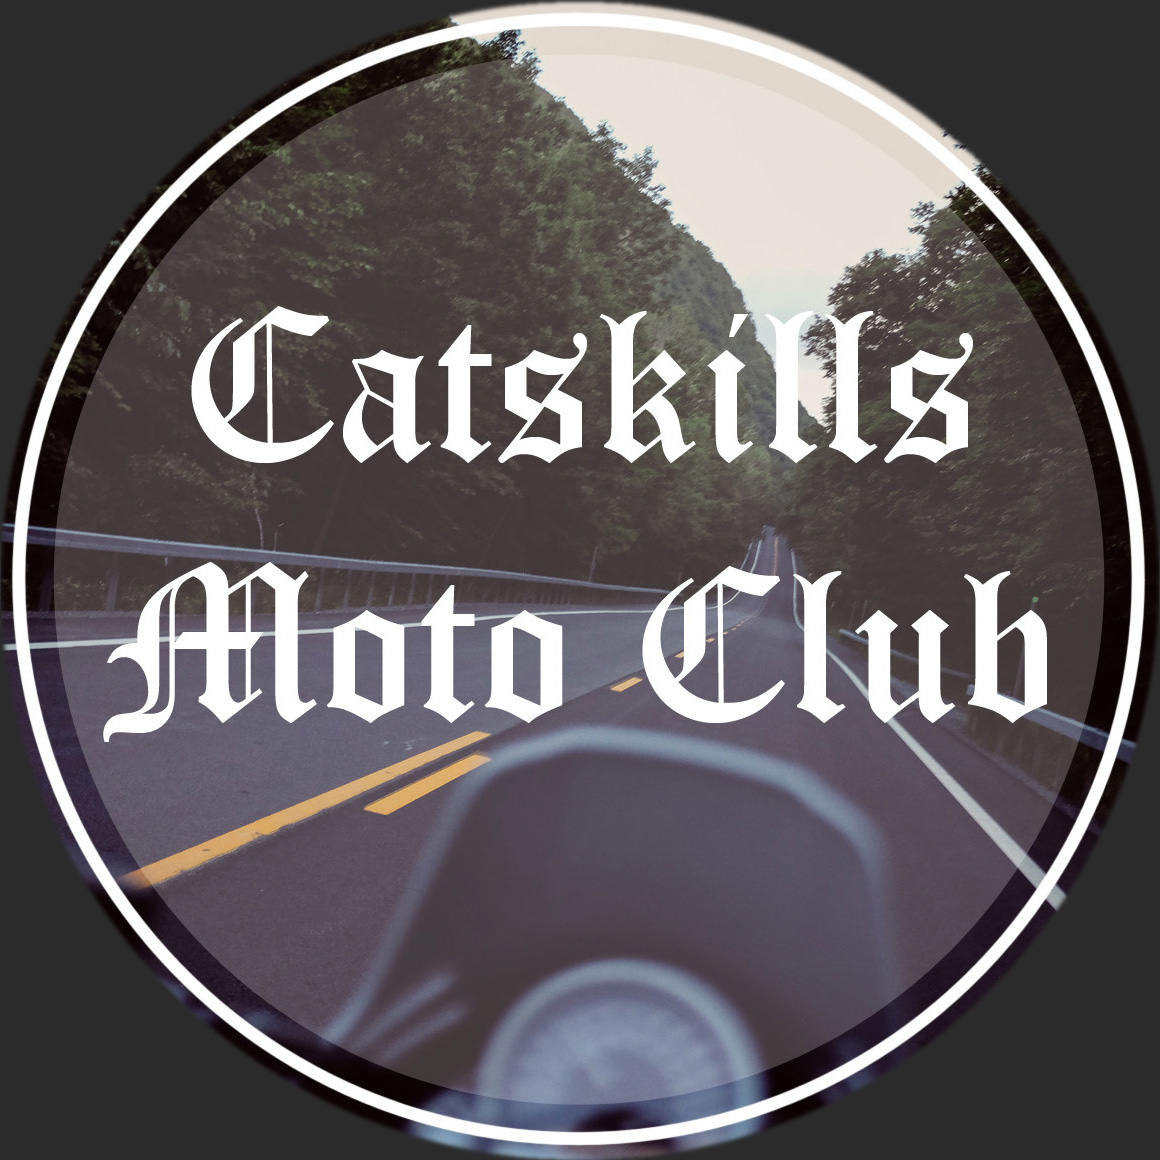 Catskills Moto Club